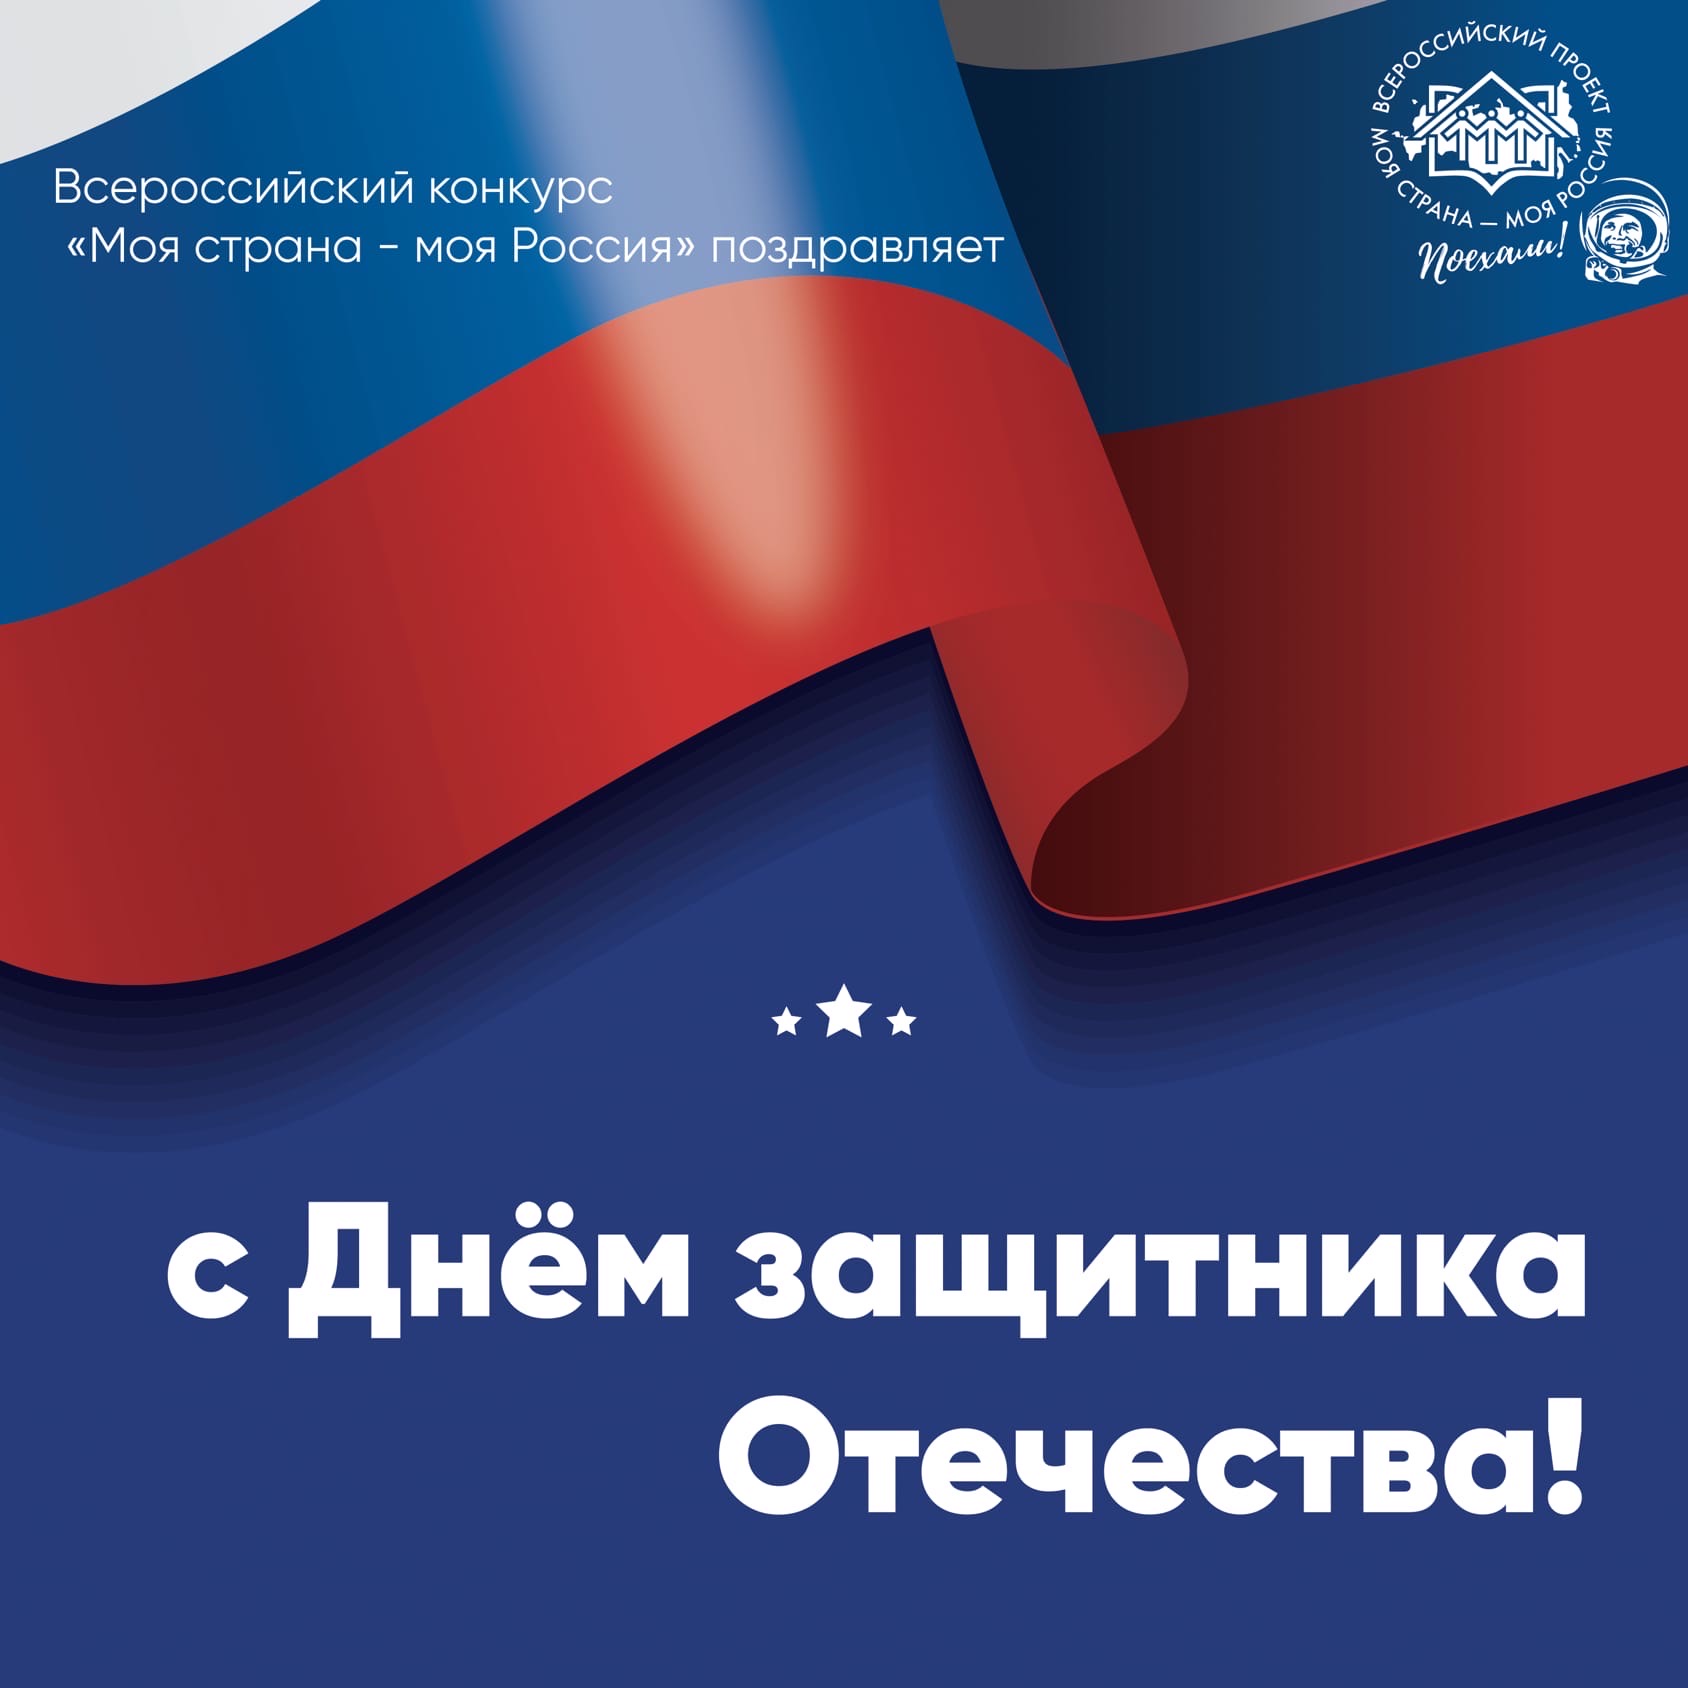 Всероссийский конкурс «Моя страна - моя Россия» поздравляет с Днём защитника Отечества!